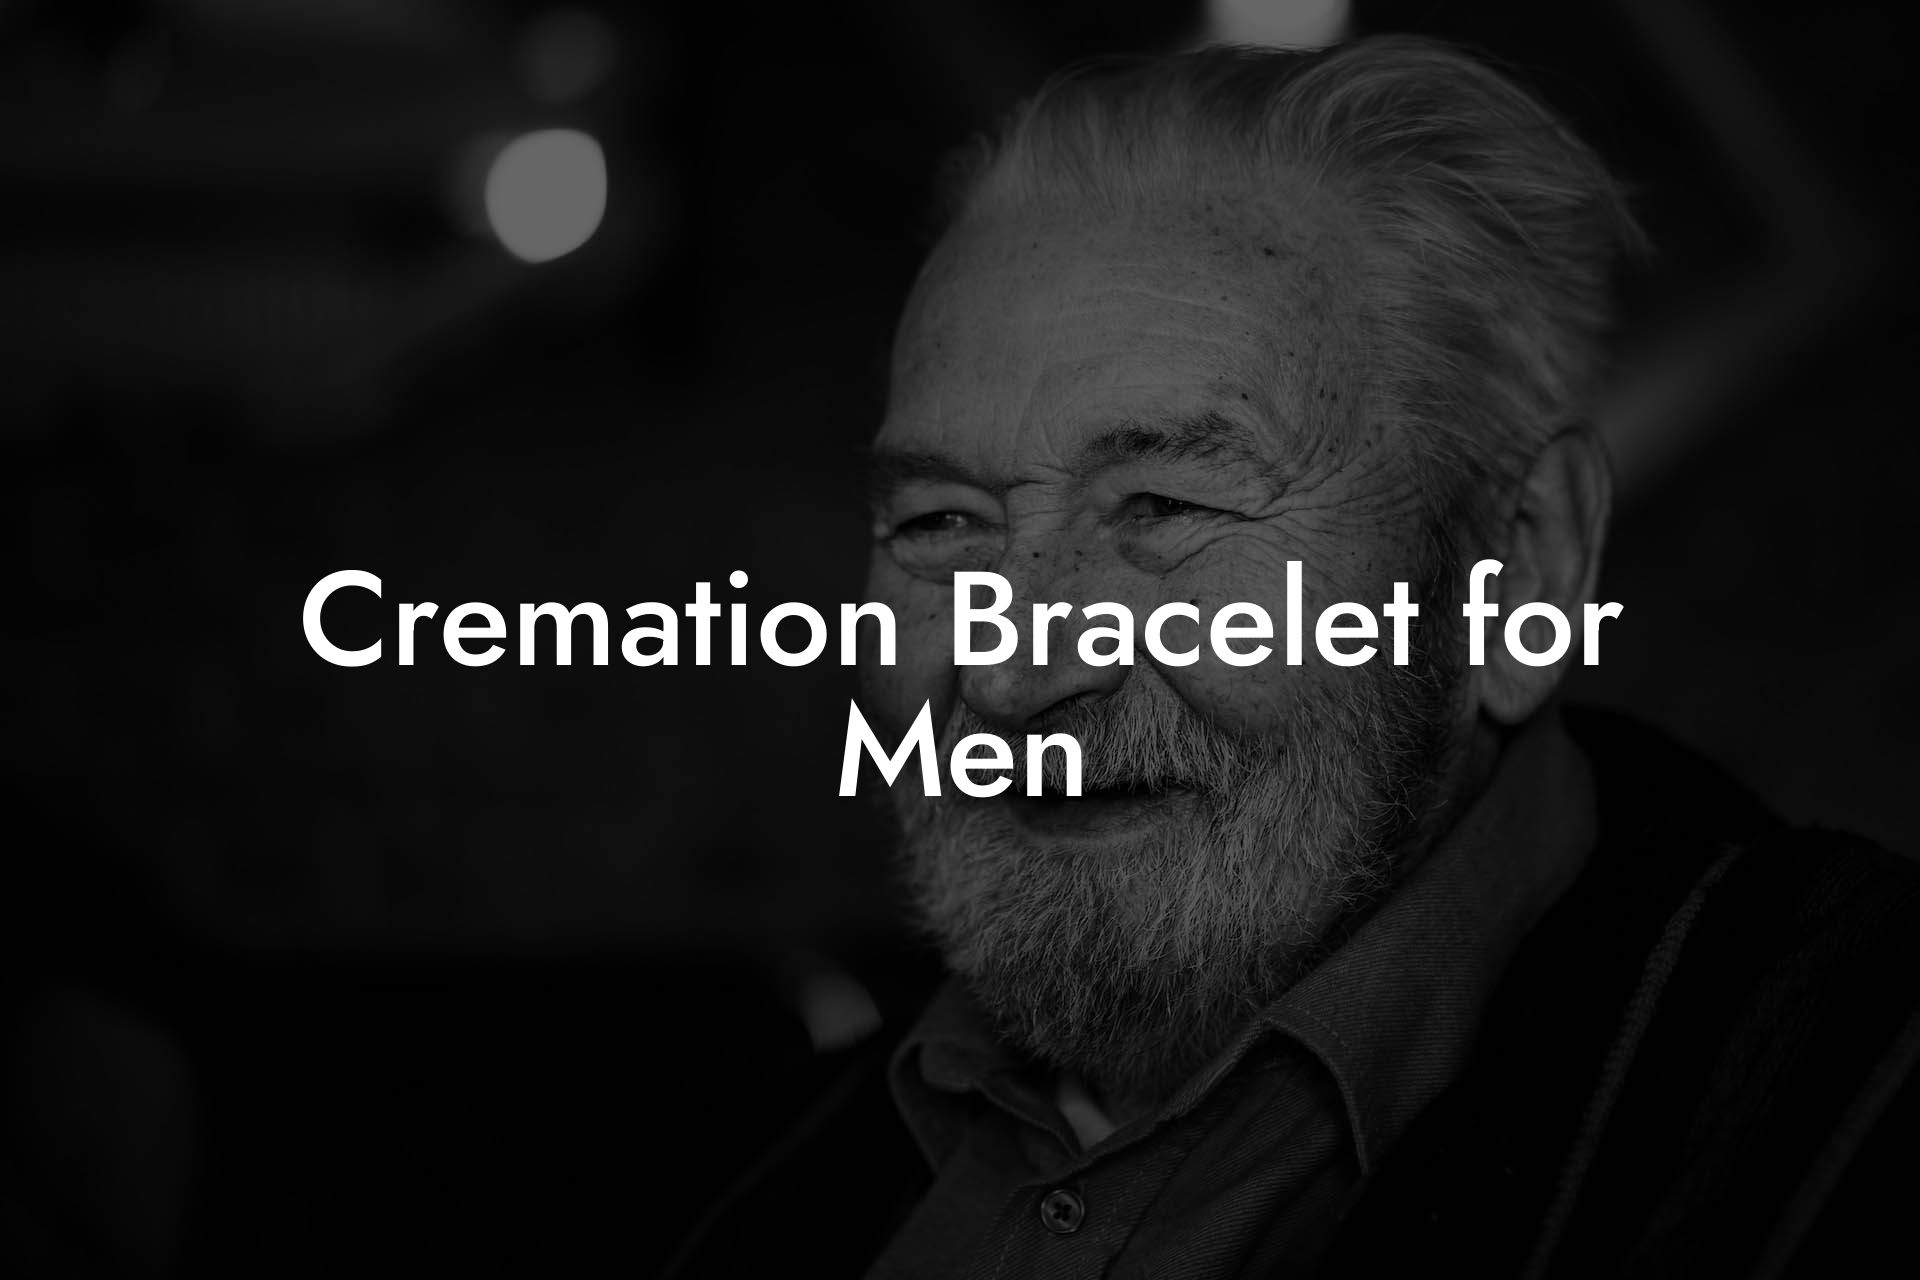 Cremation Bracelet for Men